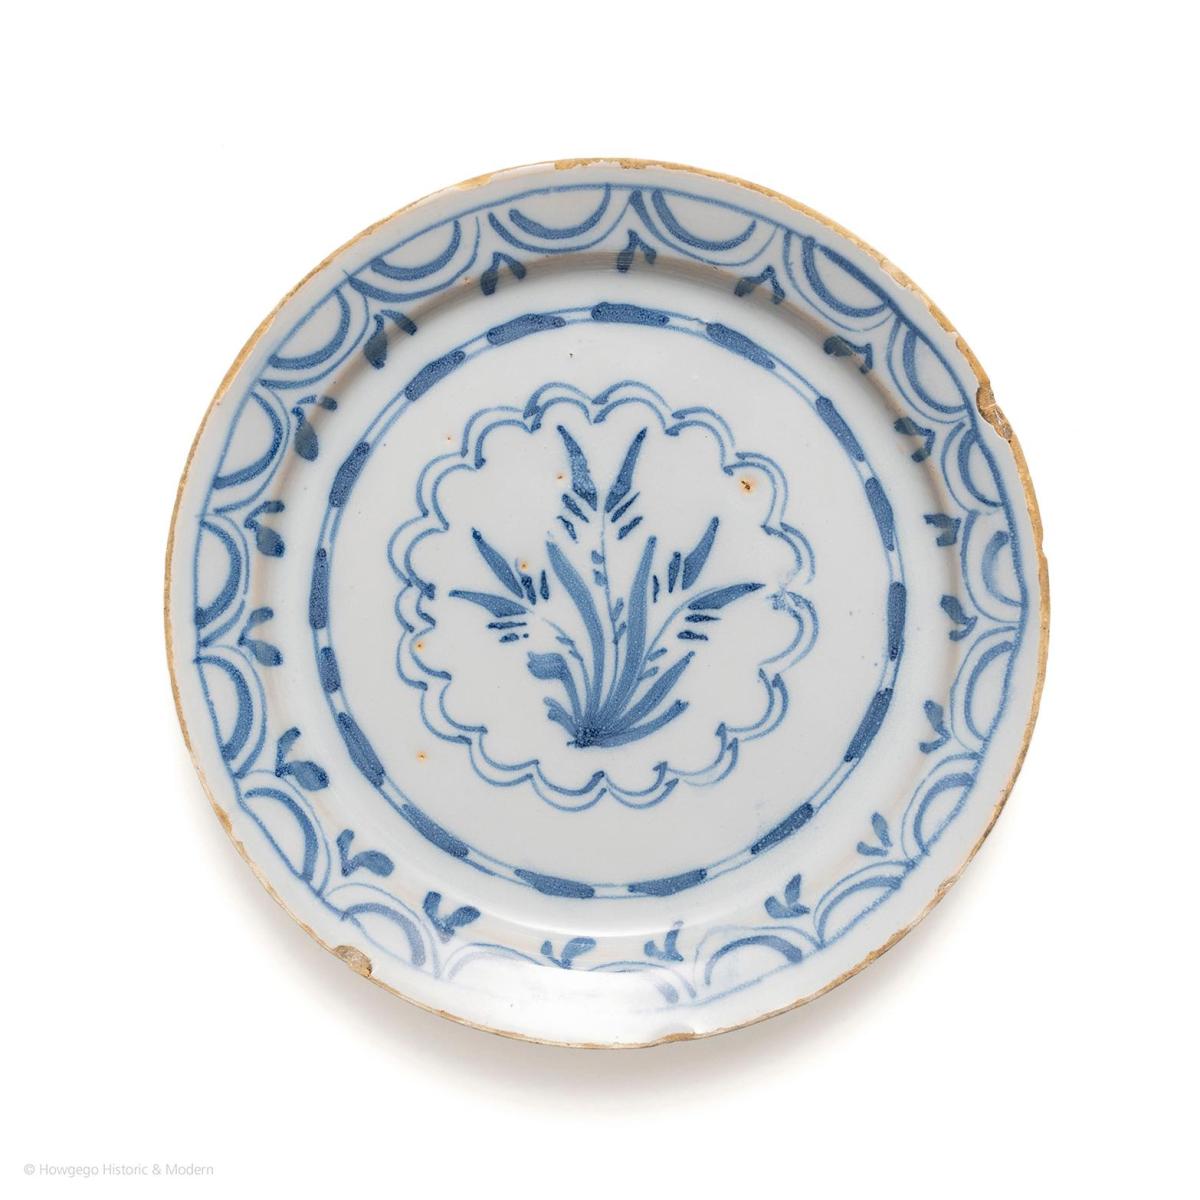 English Delftware Plate, circa 1720